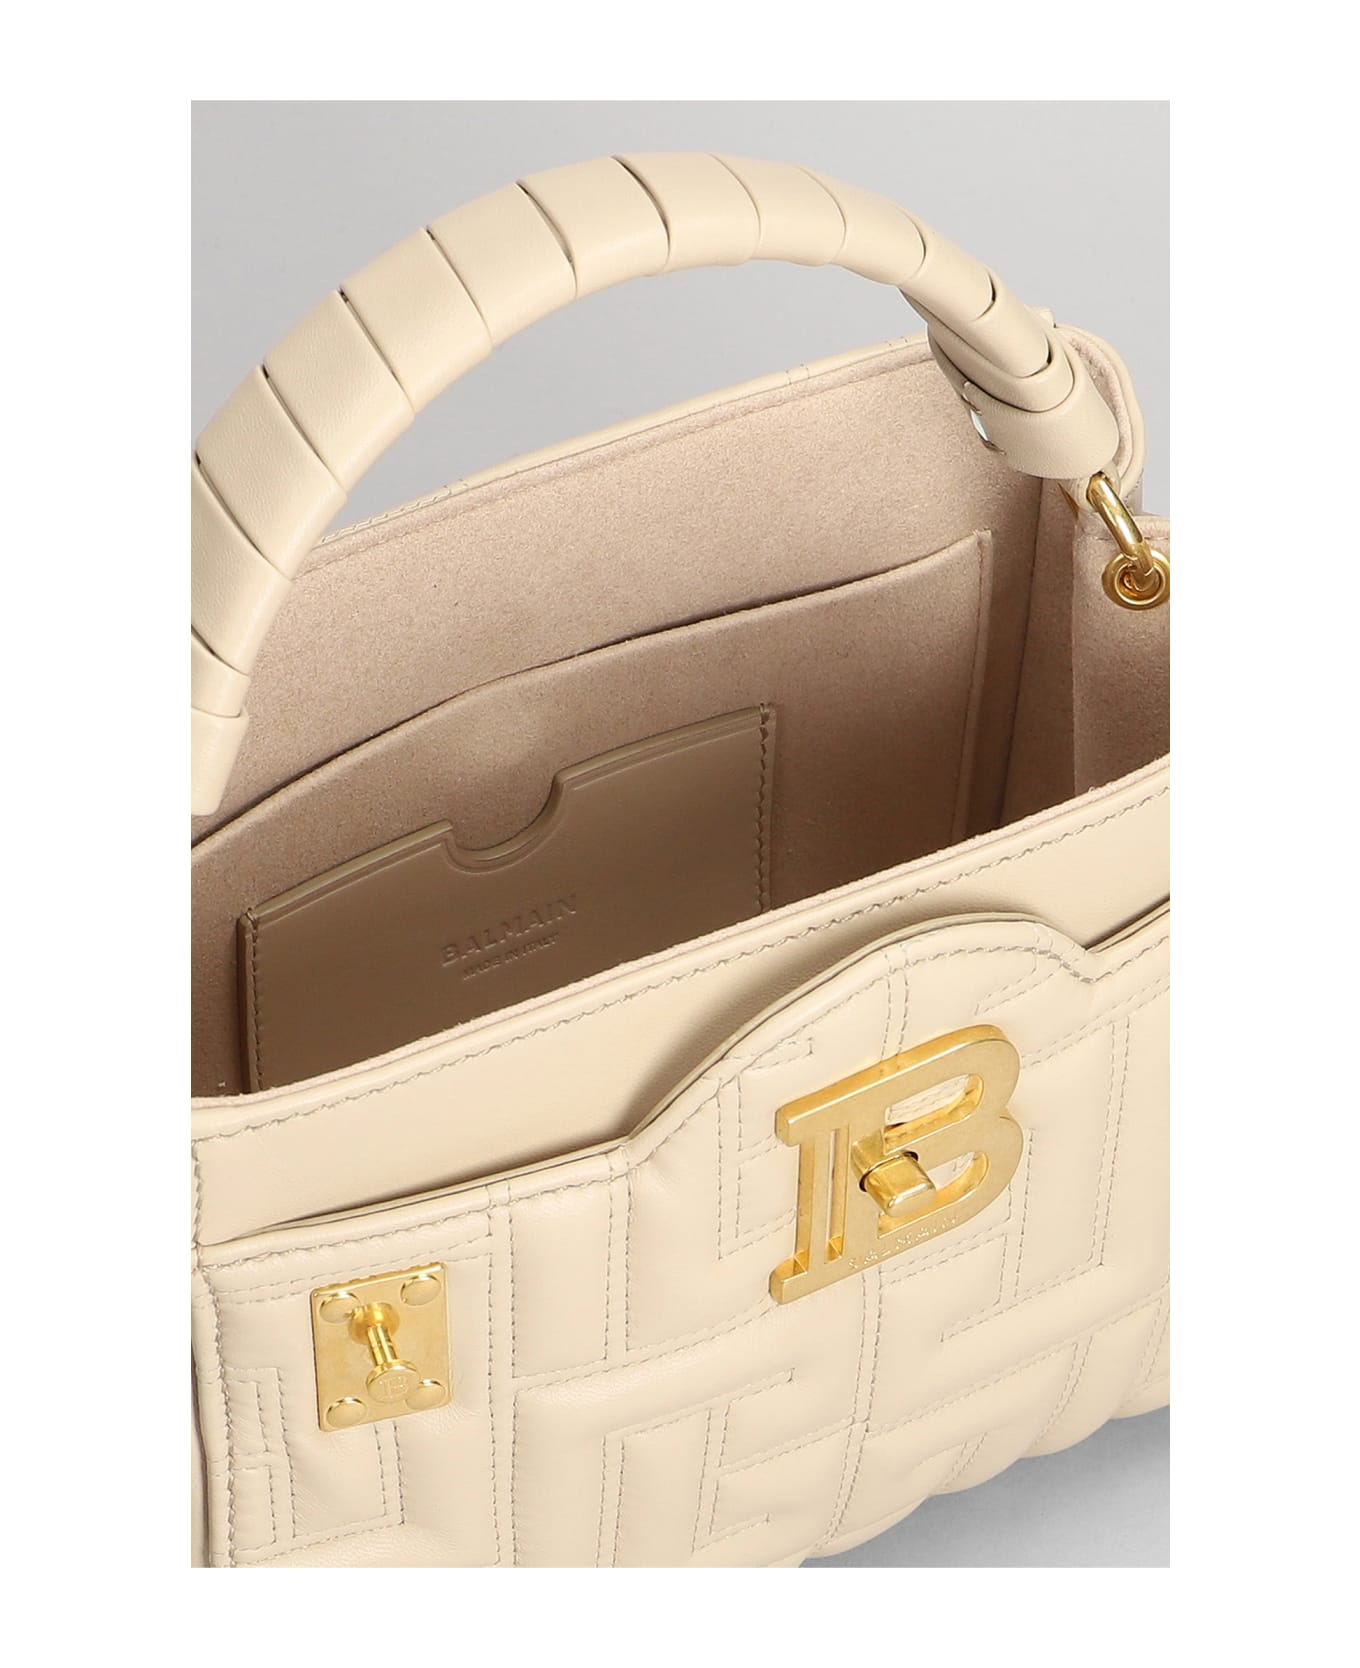 Balmain Bbuzz 22 Hand Bag In Beige Leather - beige